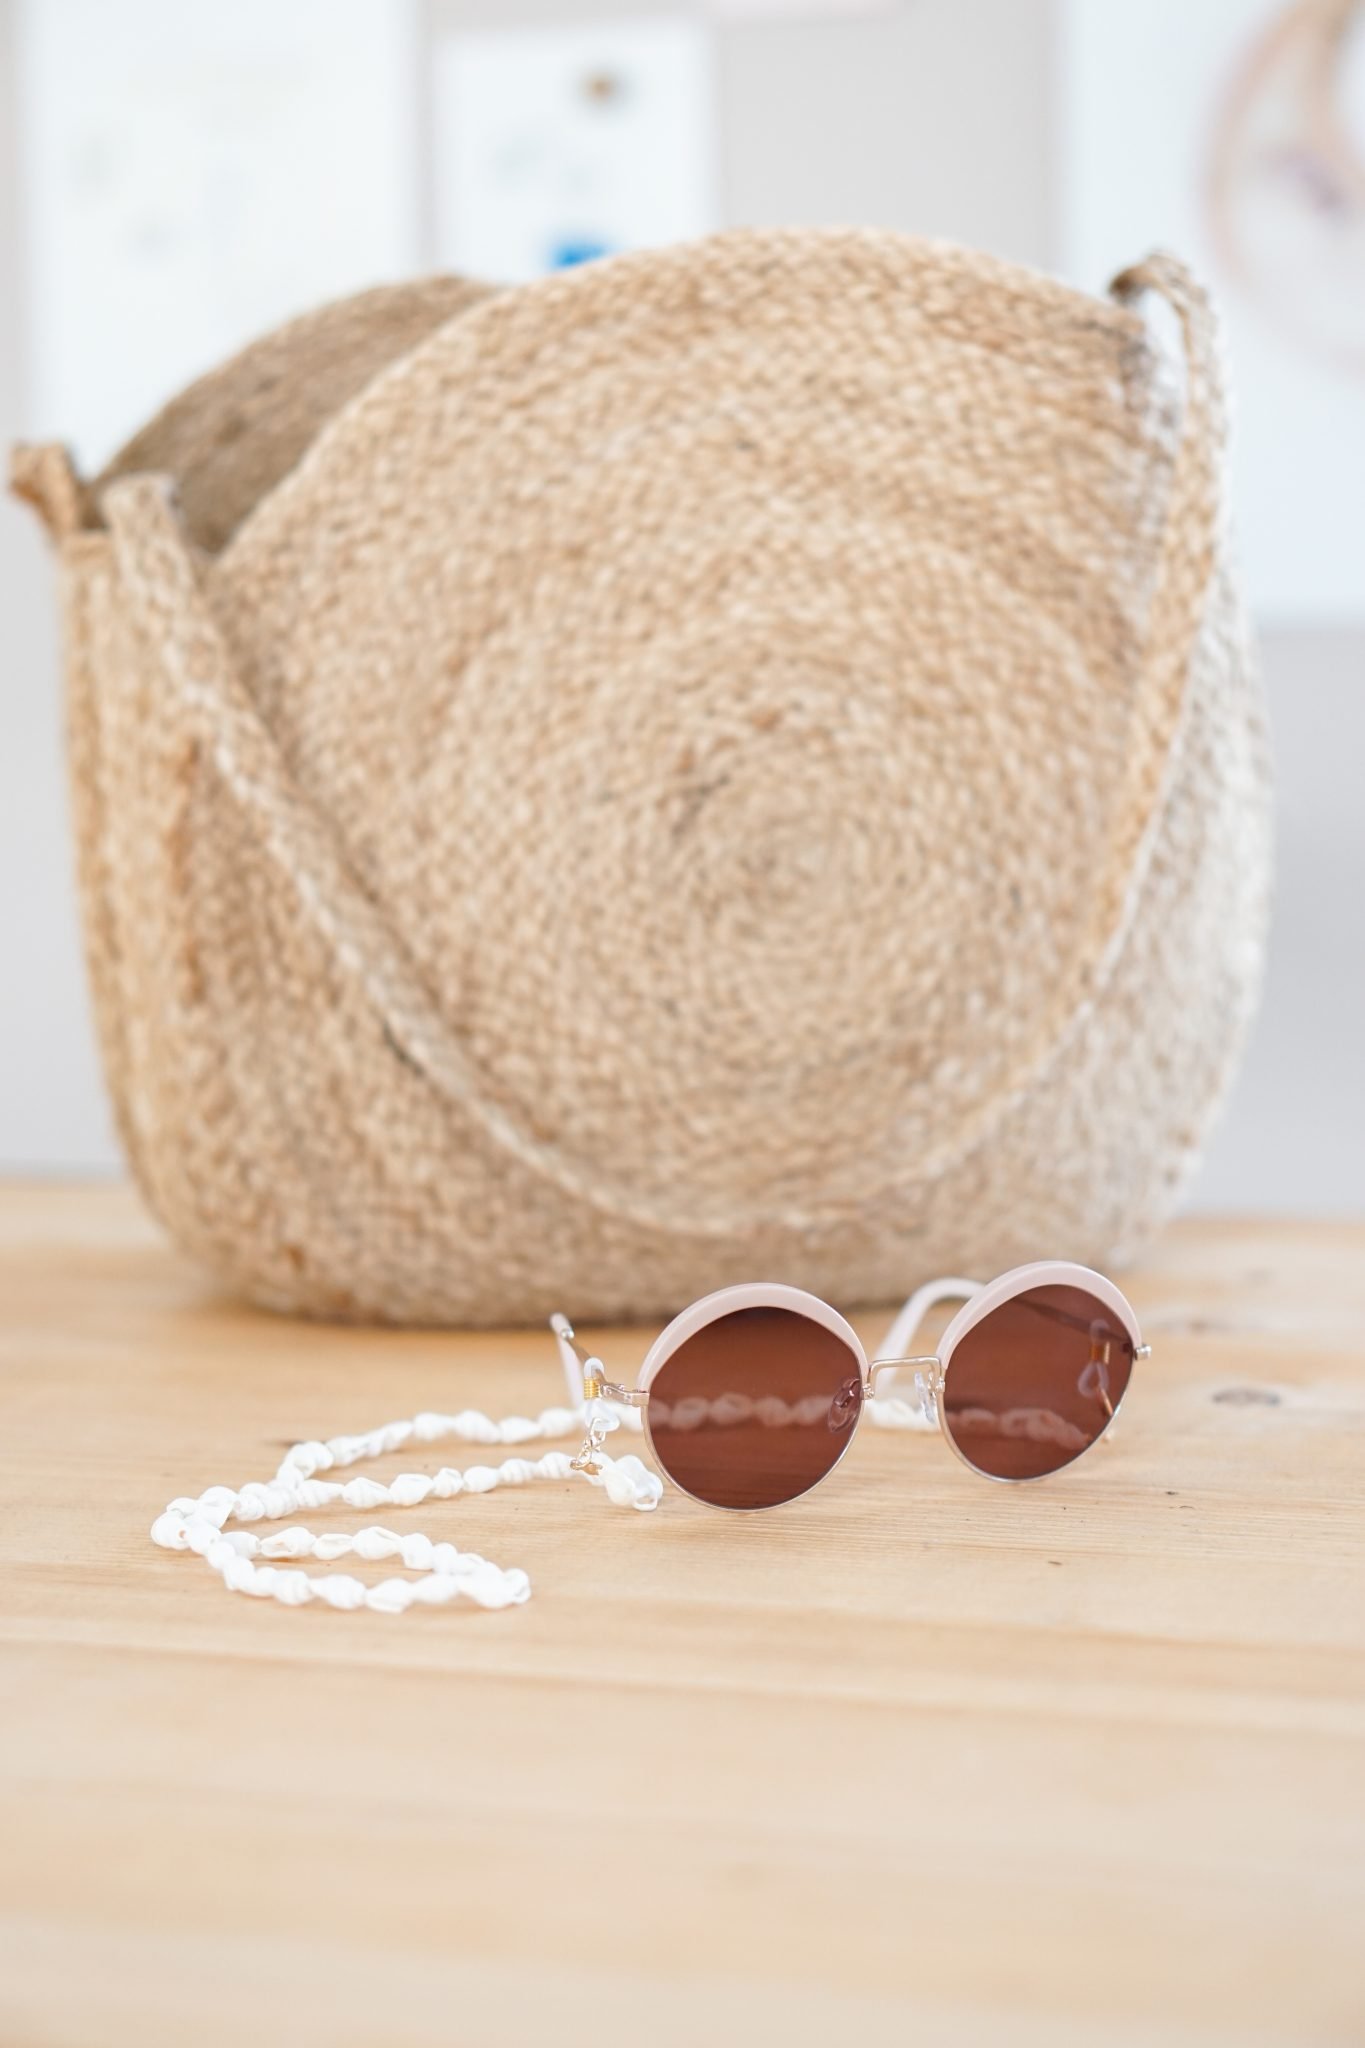 Zomer Musthave: 4x de leukste kettingen voor je zonnebril!